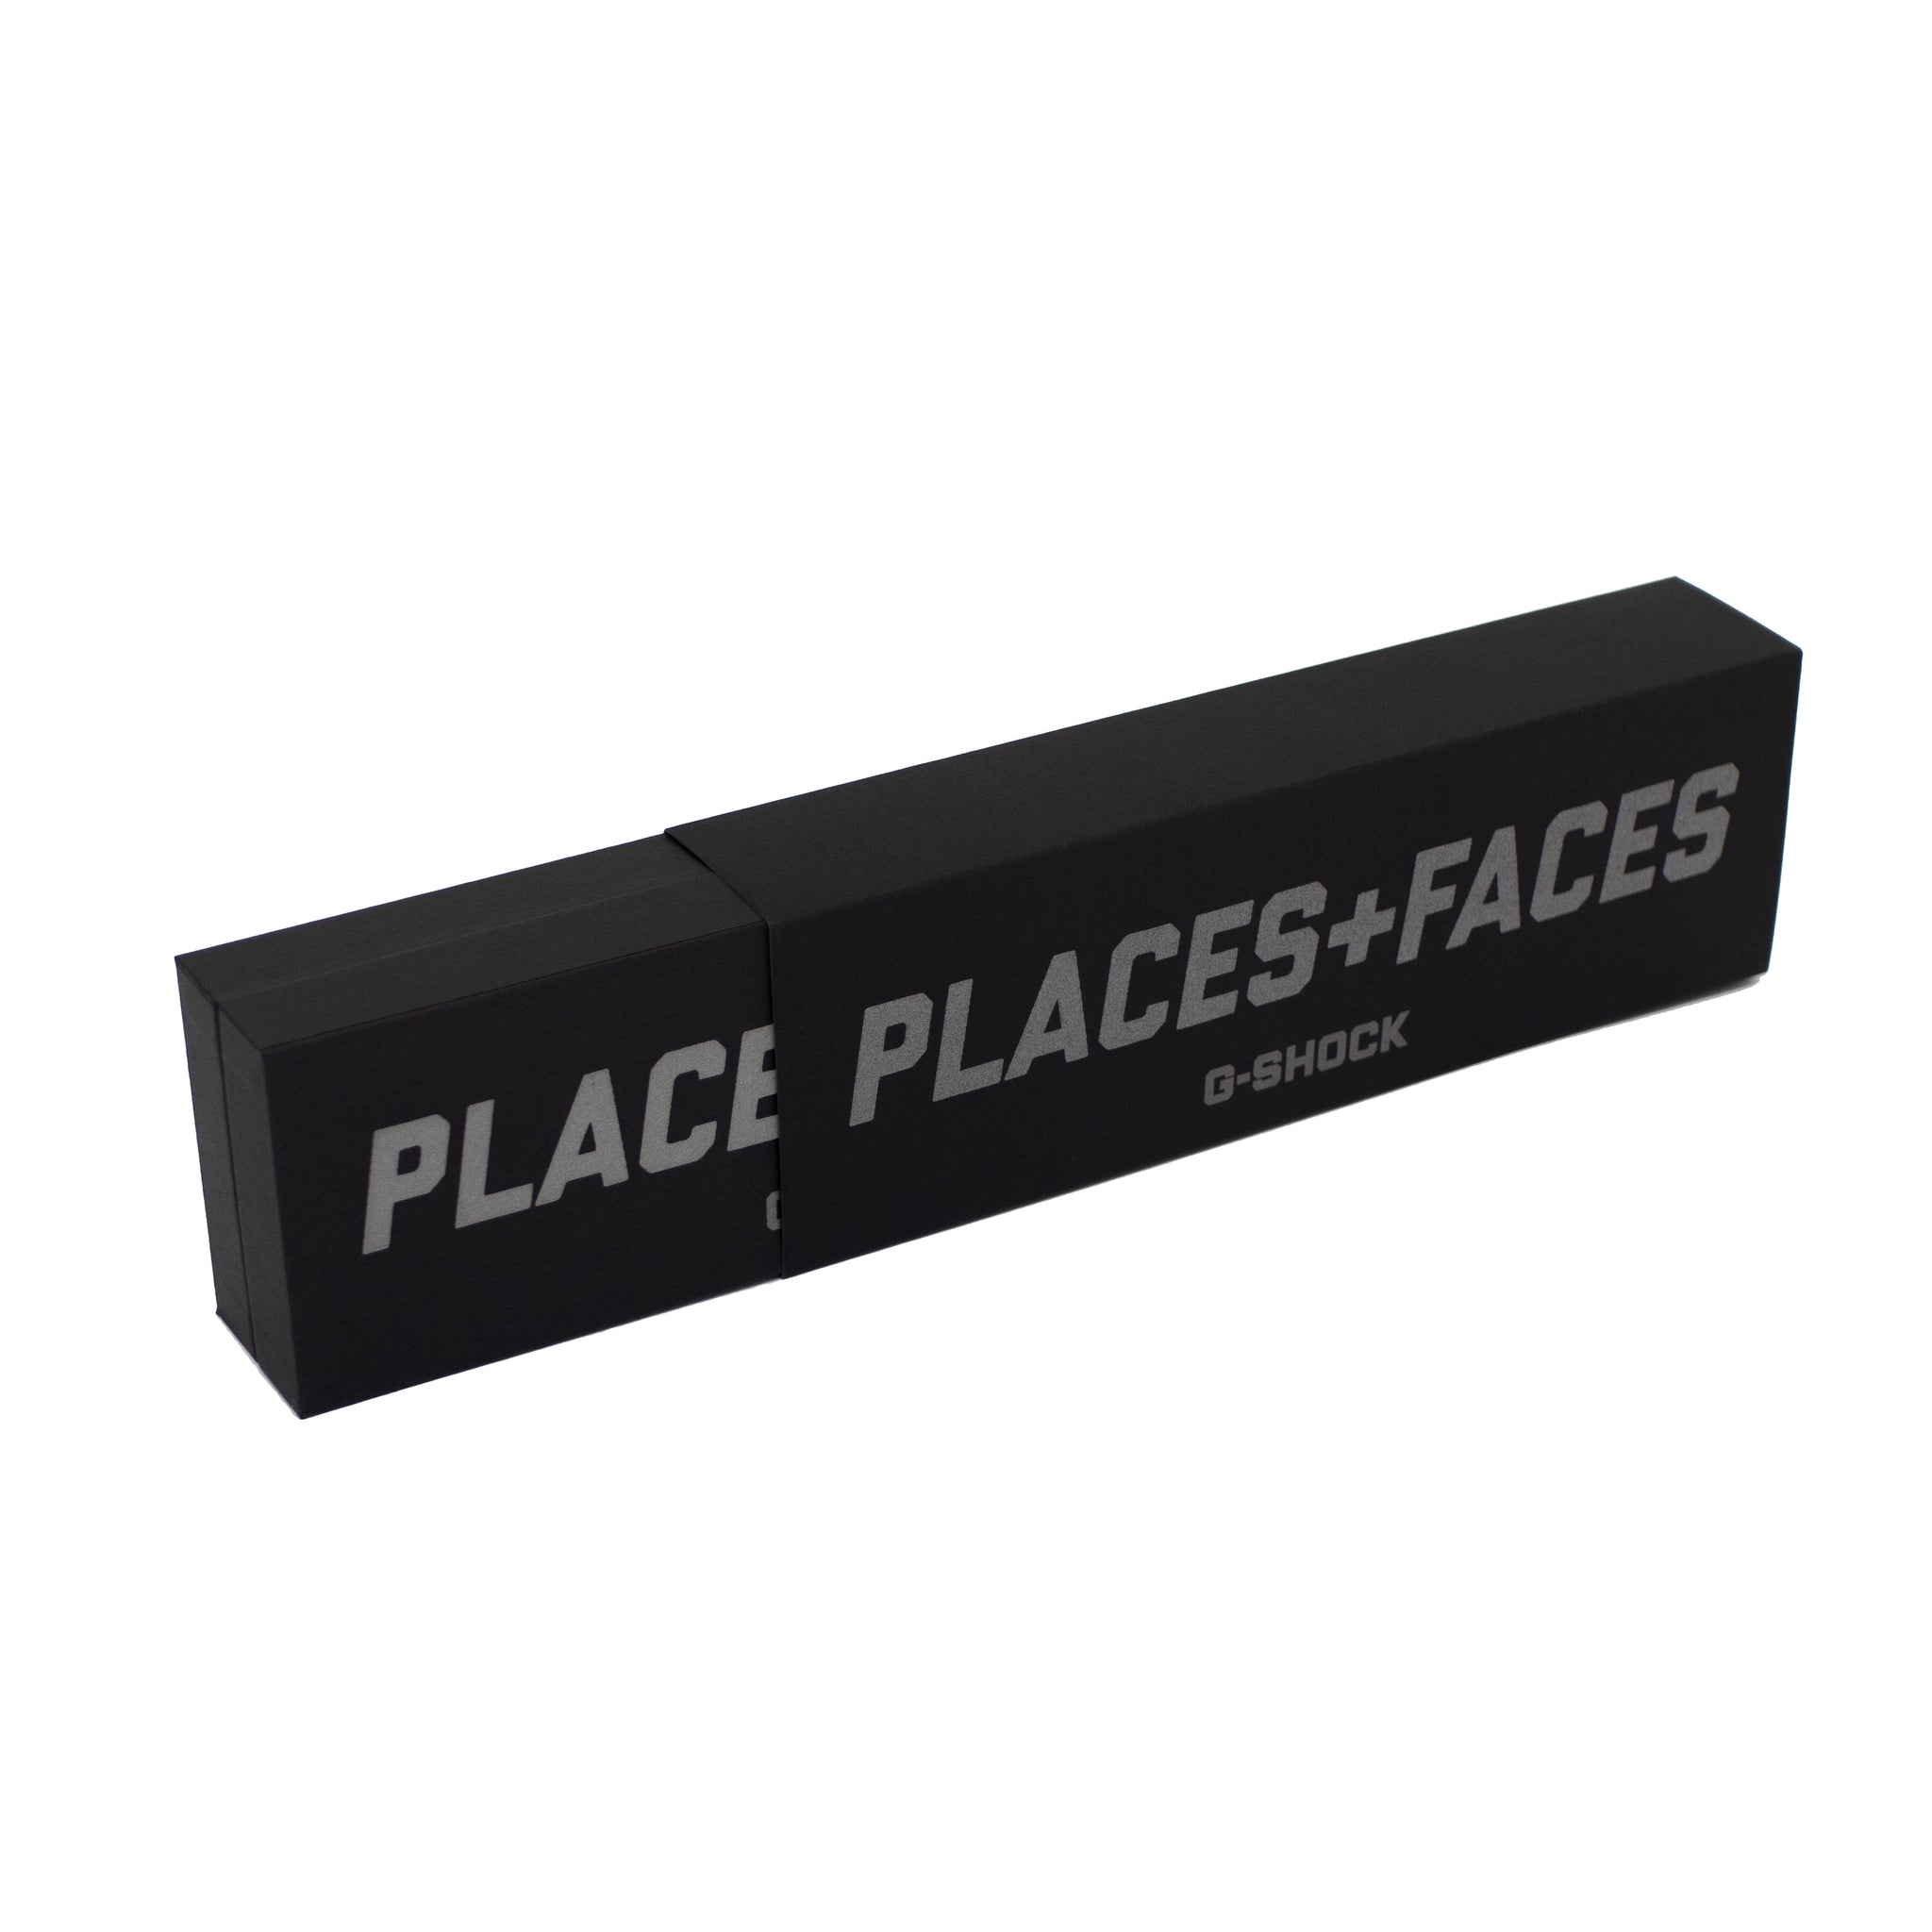 PLACES+FACES X G-SHOCK